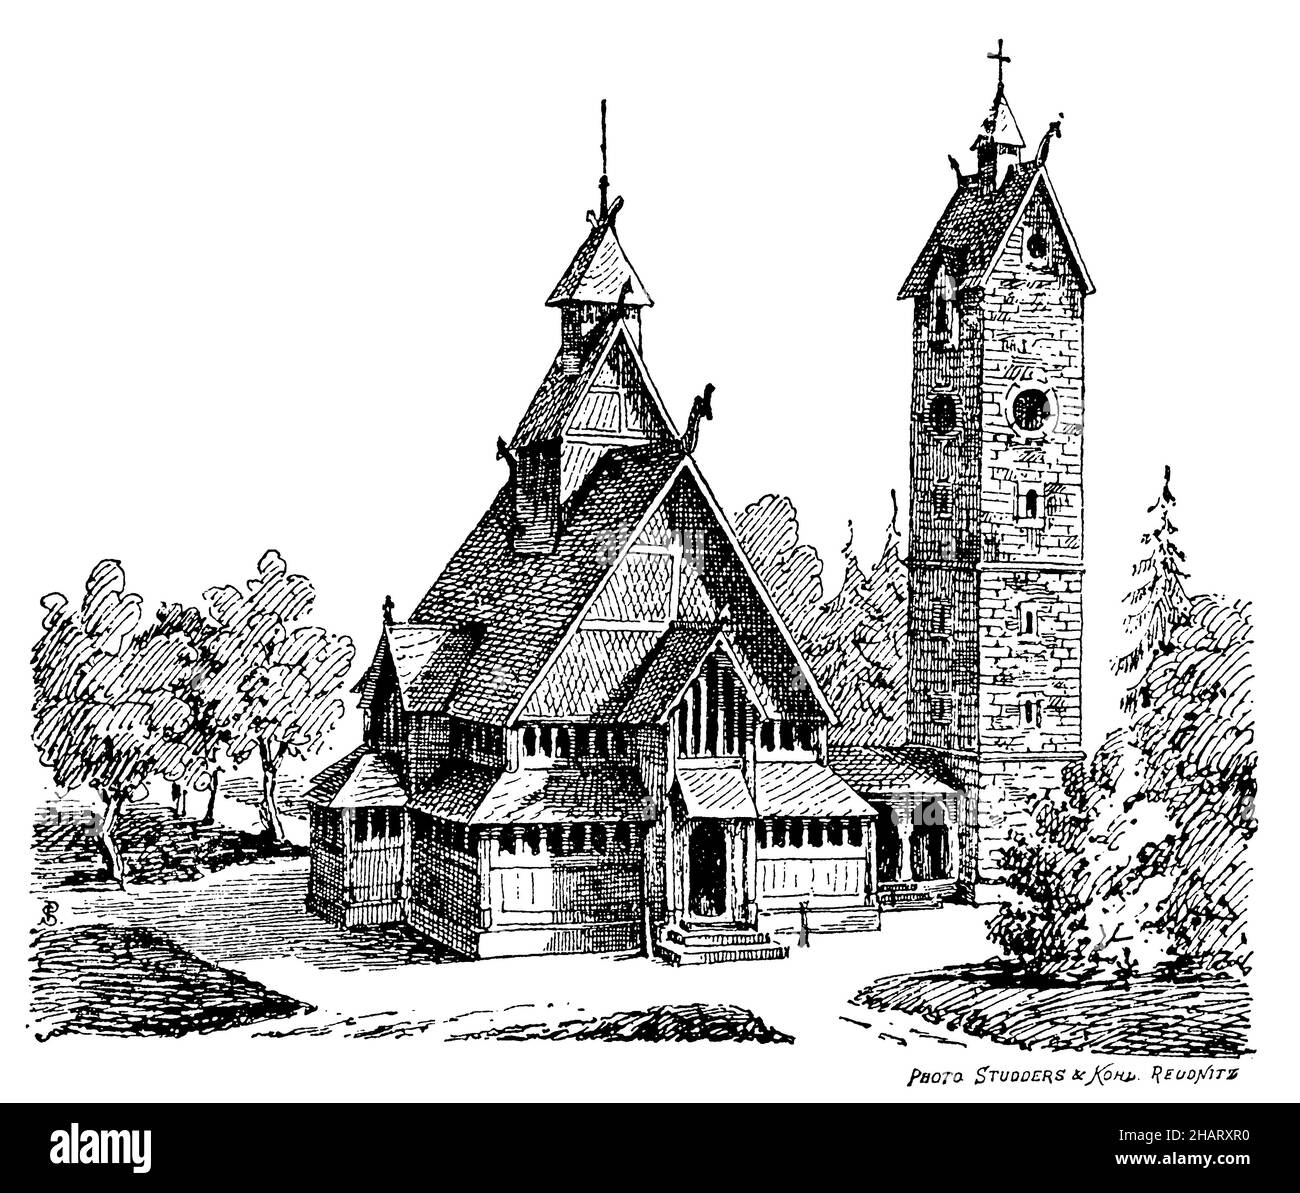 L'église Wang Stave, église médiévale norvégienne de Vang, acquise par le roi prussien Frederick William IV en 1841 et reconstruite à Brückenberg (aujourd'hui Karpacz Górny), aujourd'hui un quartier de Krummhübel (aujourd'hui Karpacz) dans les Monts Krkonoše.(Selon Lachner), , photo Studders & Kons (livre d'histoire de l'art, 1904), Stabkirche Wang, mittelalterliche norwegische Stabholzkirche aus Vang, die 1841 vom preußischen Friedrich König IV. Erworben und in Brückenberg (heöl Karpacz Górny), die Krütwukheel de Krweich im de Körtwübeim.(Nach Lachner), Stabki Banque D'Images